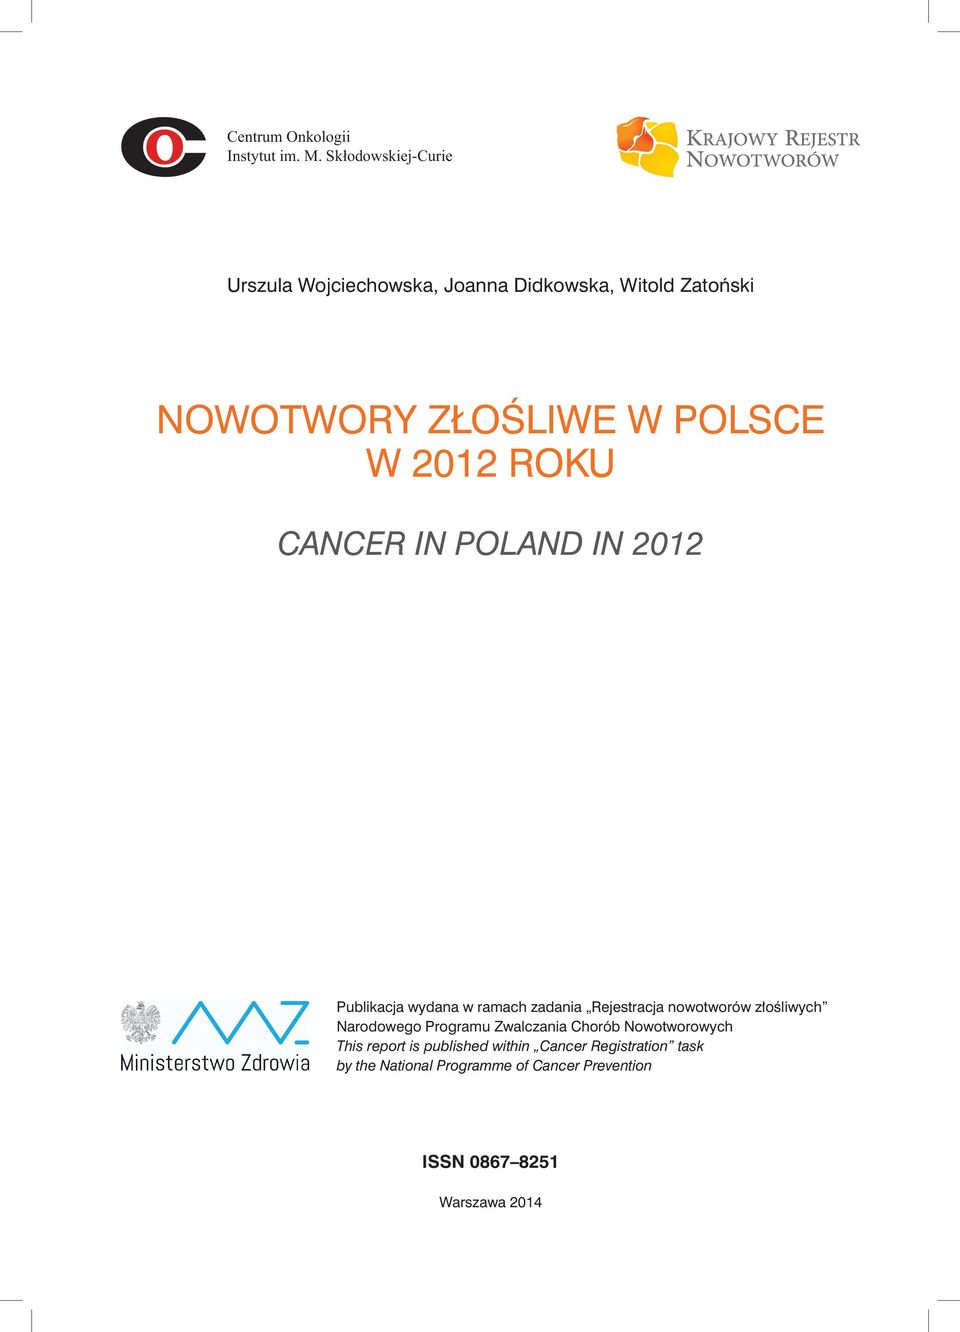 2012 ROKU CANCER IN POLAND IN 2012 Publikacja wydana w ramach zadania Rejestracja nowotworów złośliwych